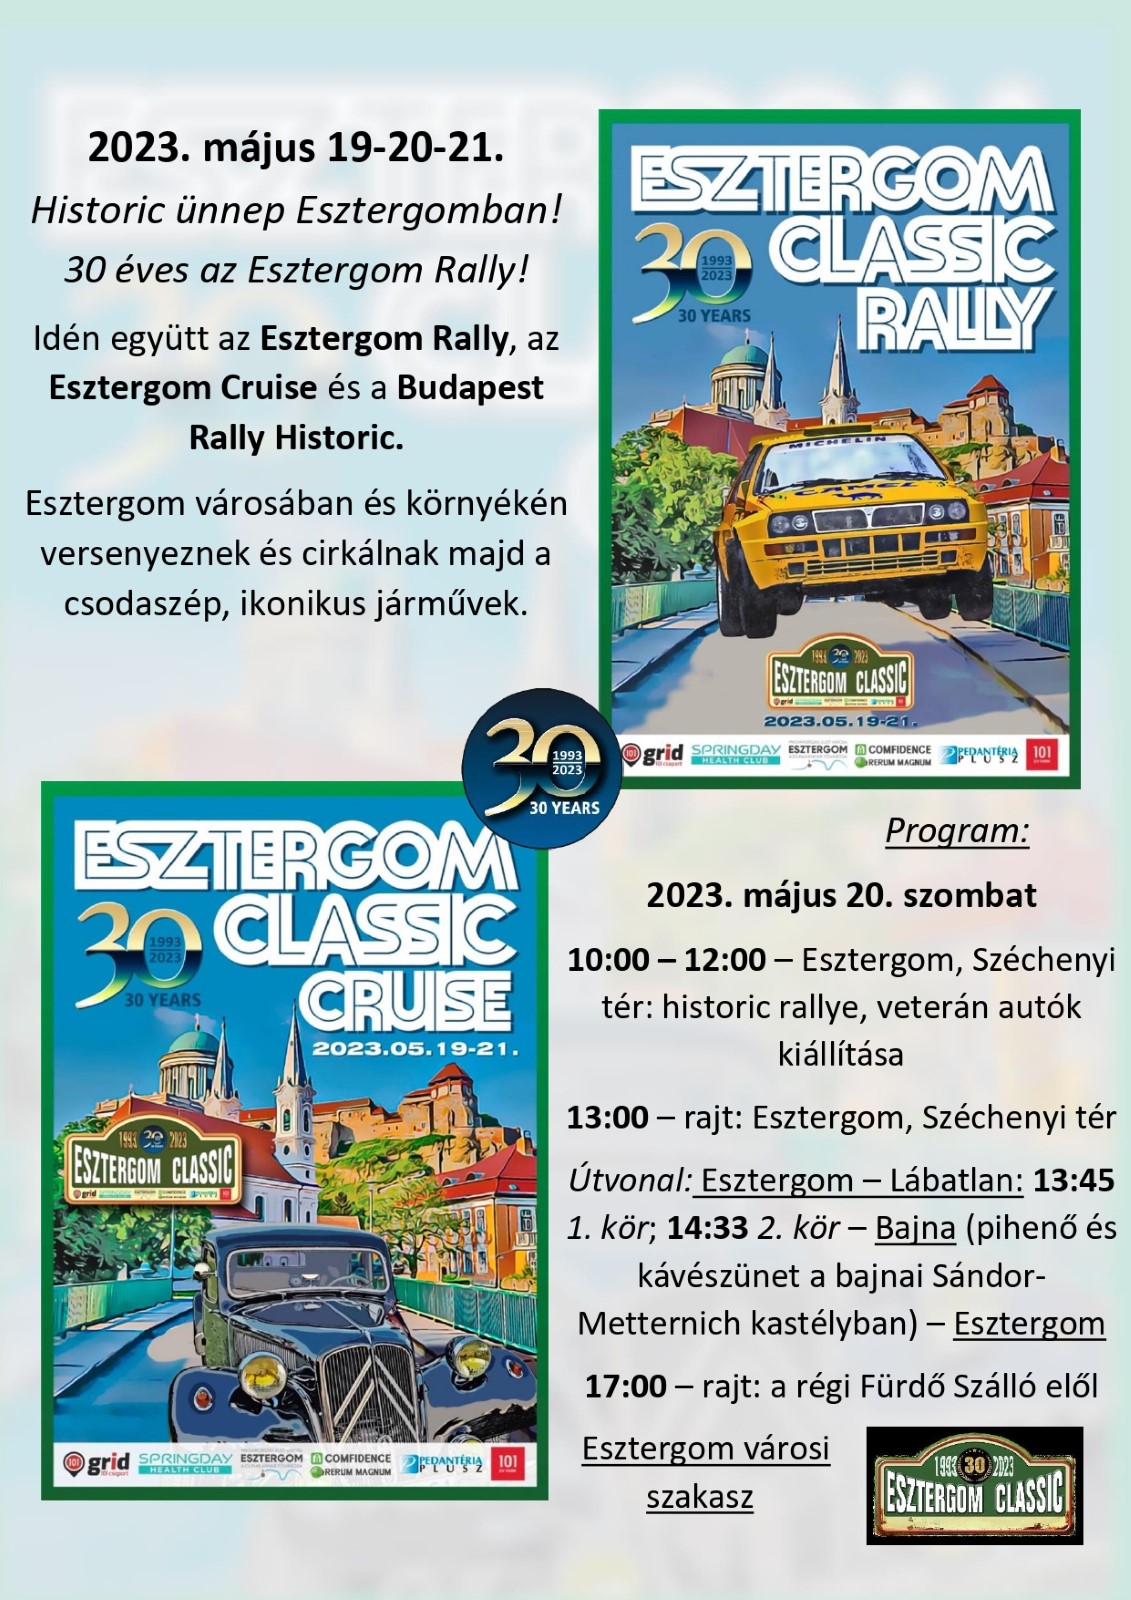 Teljes útlezárás az Esztergom Classic Rally idejére